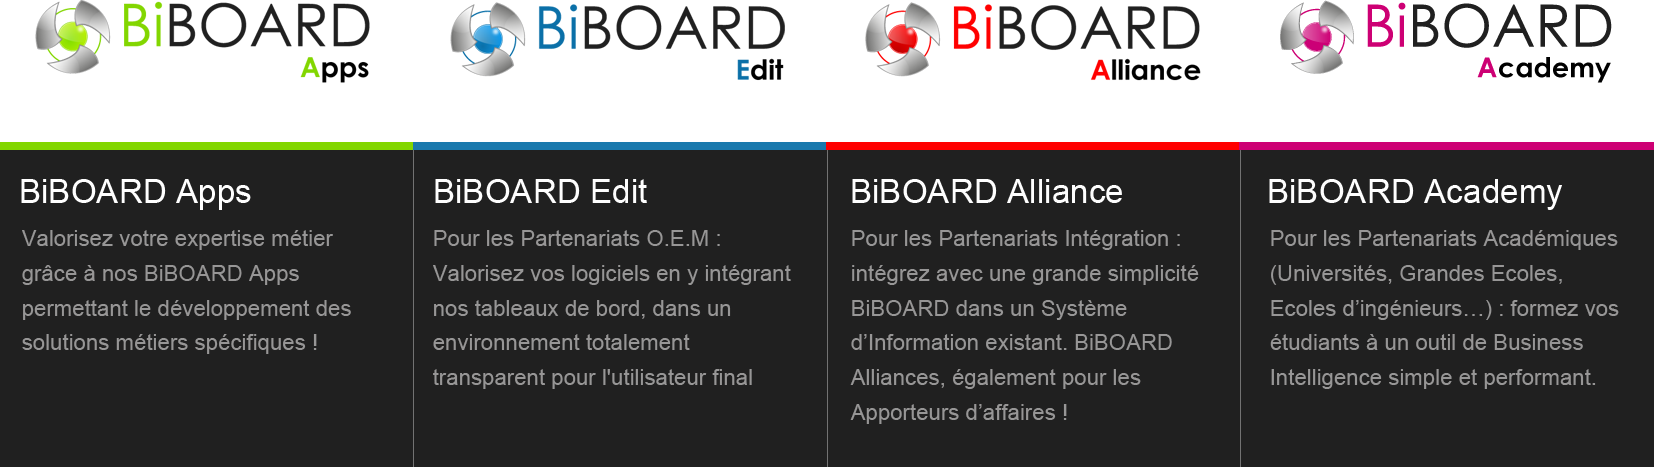 17 mai 2013 ChannelBiz BiBOARD renouvelle ses programmes partenaires L éditeur BiBOARD restructure ses programmes partenaires en créant quatre catégories appelées BiBOARD Apps, Edit, Alliance et